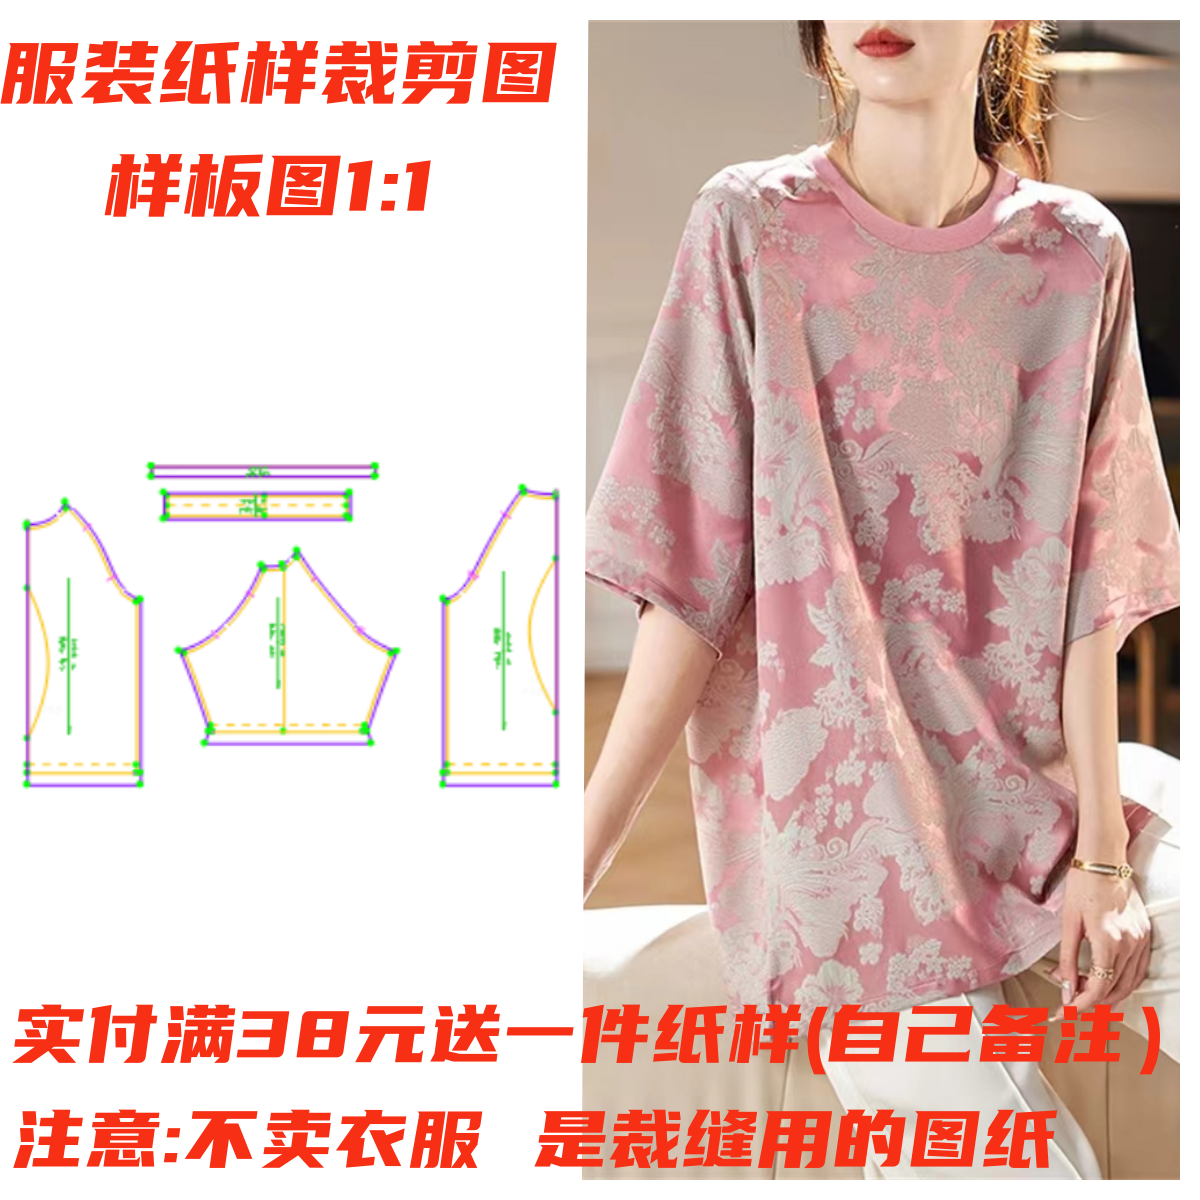 服装裁剪图1248 廓版圆领插肩袖雪纺T恤衫纸样 DIY1:1缝制设计图